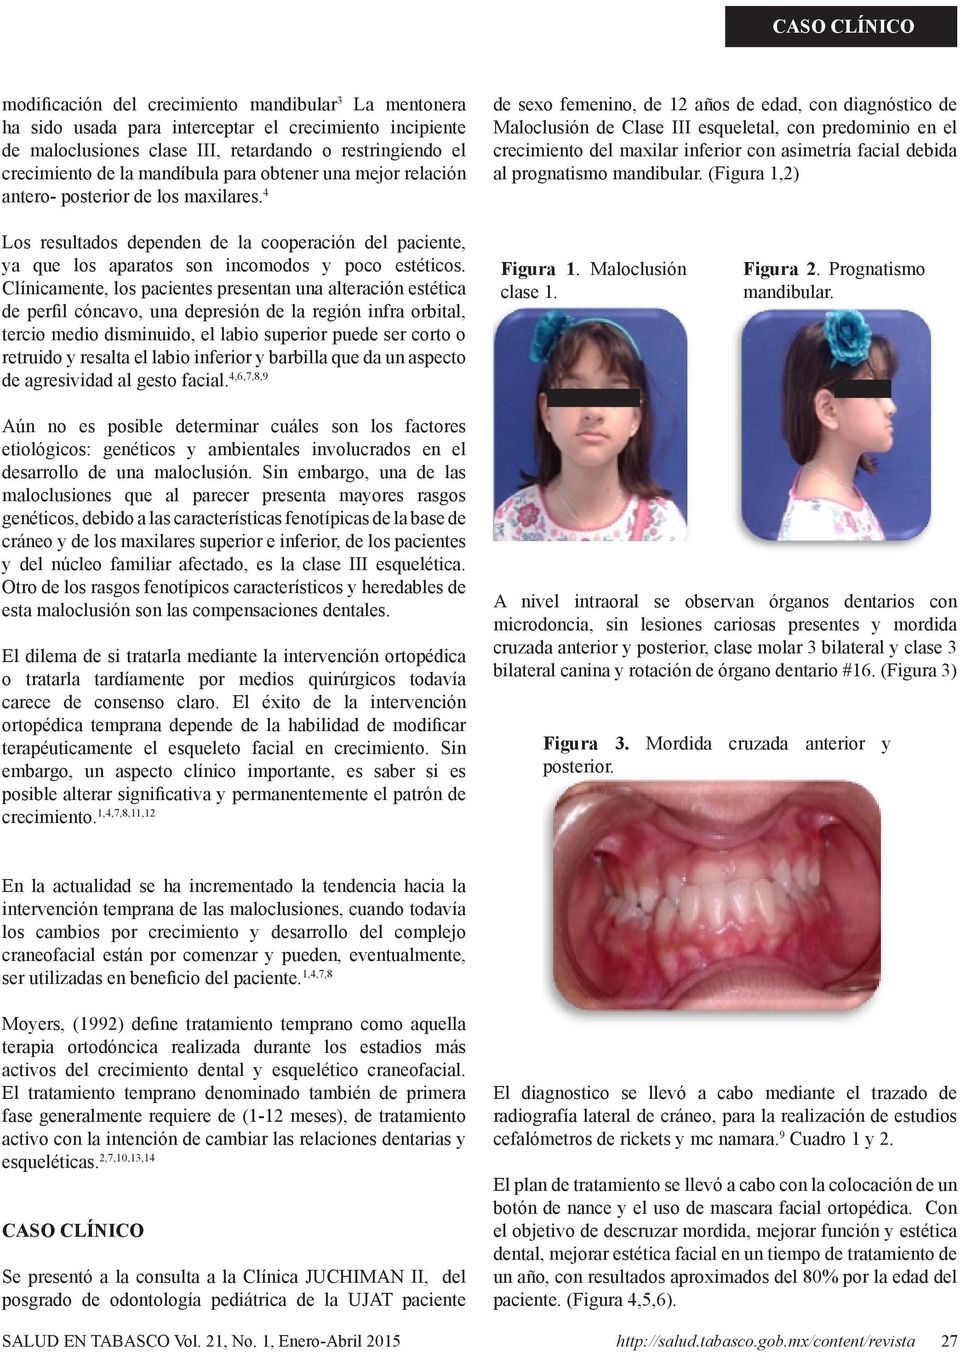 4 de sexo femenino, de 12 años de edad, con diagnóstico de Maloclusión de Clase III esqueletal, con predominio en el crecimiento del maxilar inferior con asimetría facial debida al prognatismo